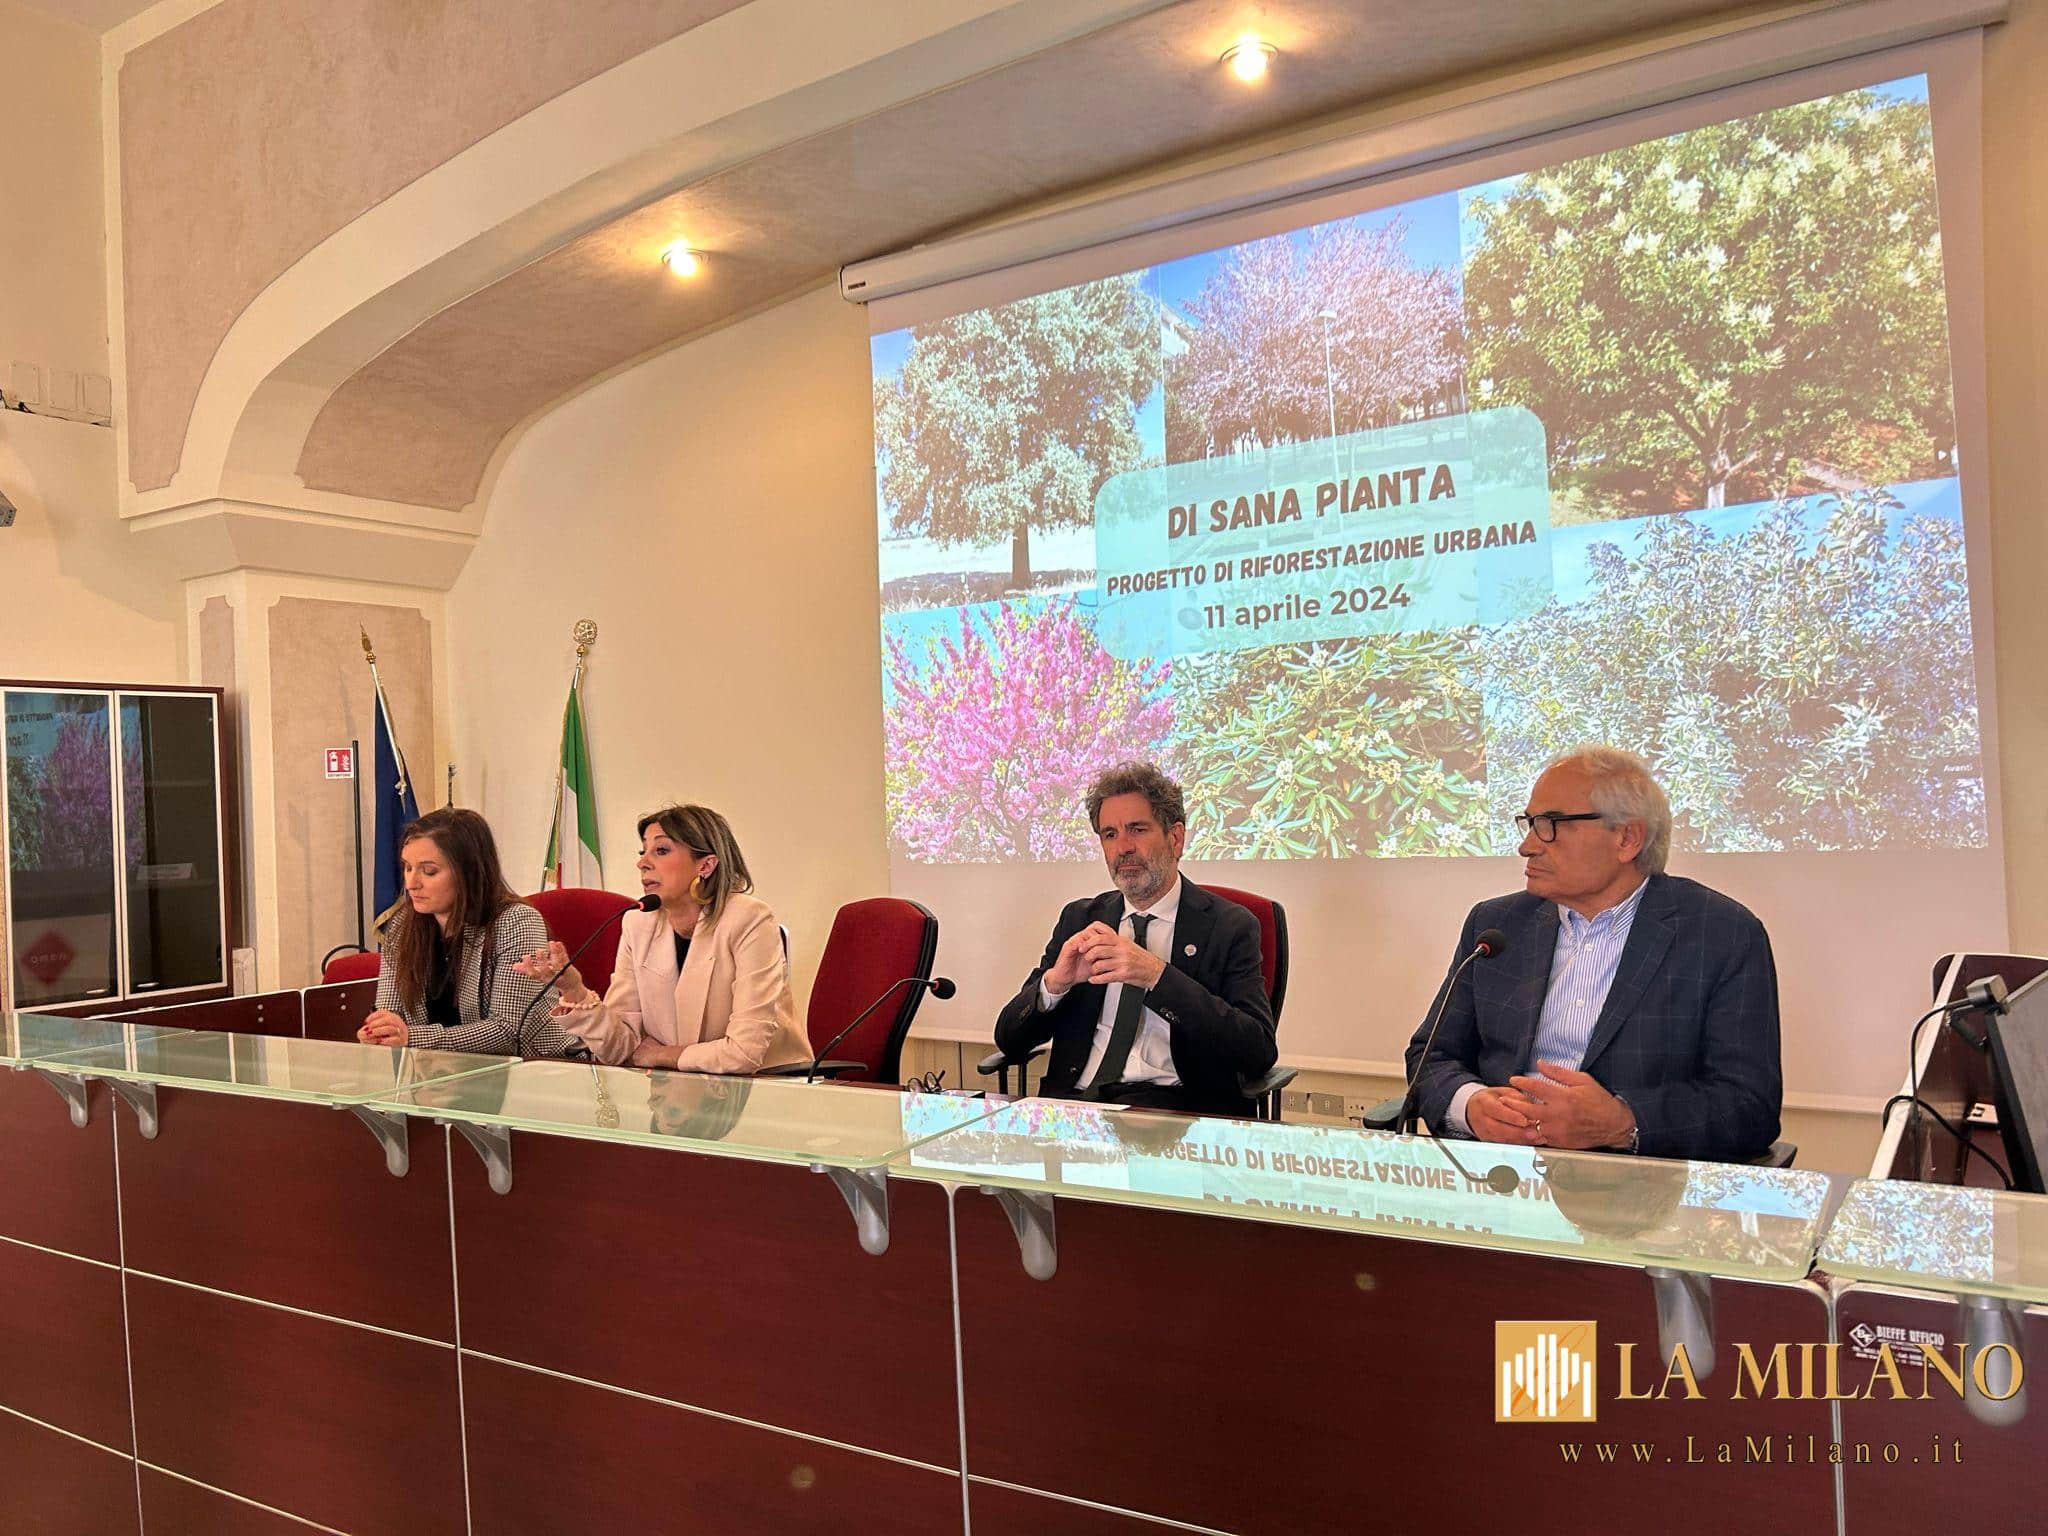 Di sana pianta 2024: 152 nuovi alberi nella città di Lecce per riempire le piccole aiuole rimaste vuote.